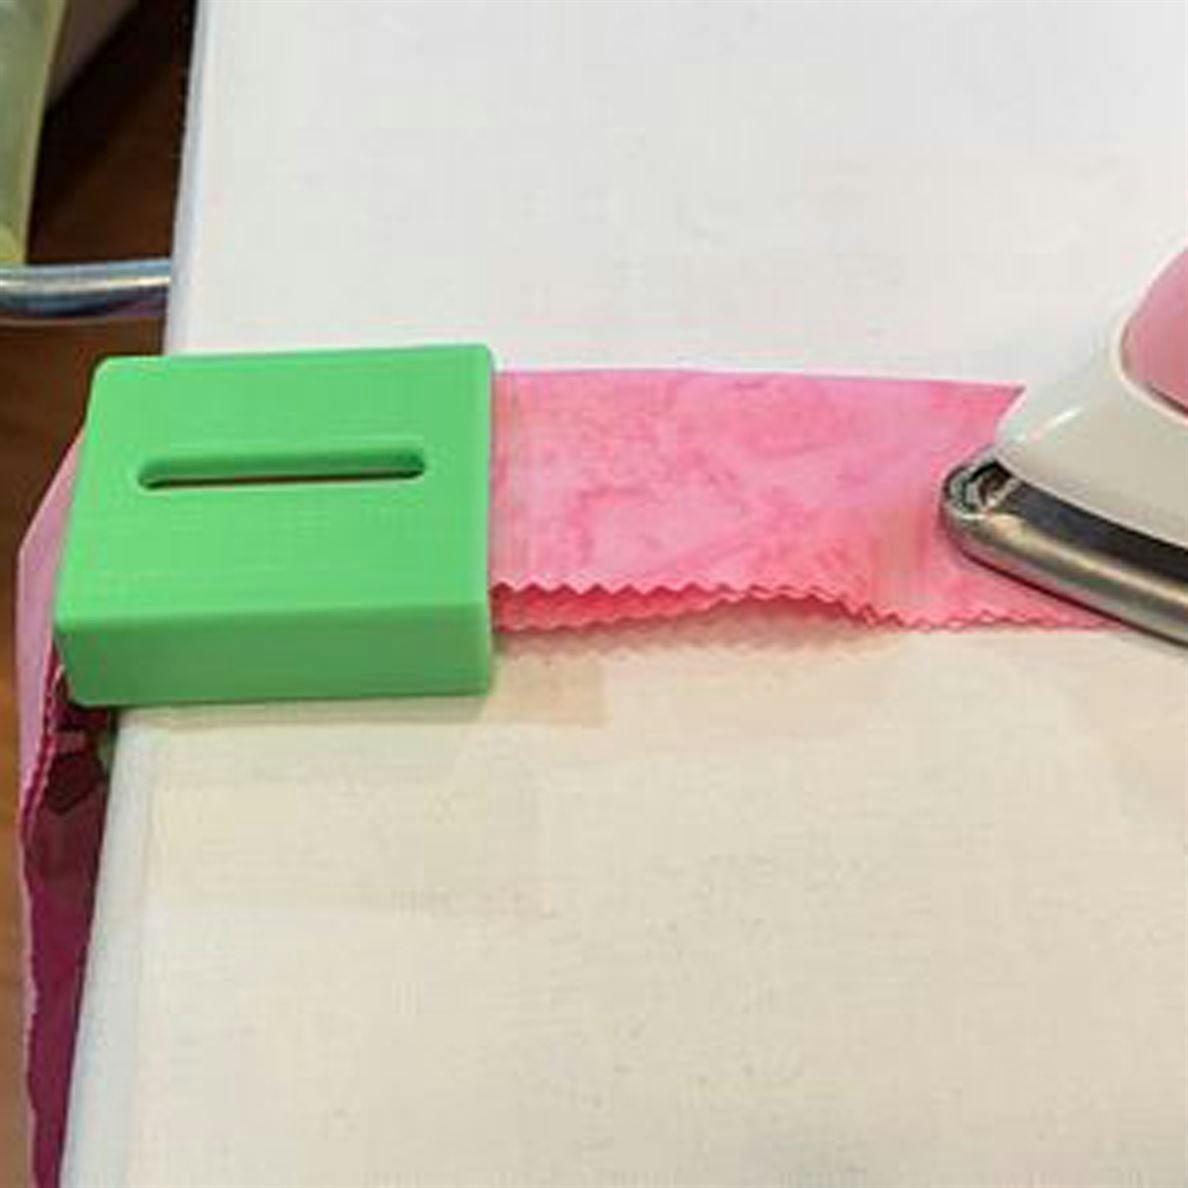 Ironing binding using green binding folding clip